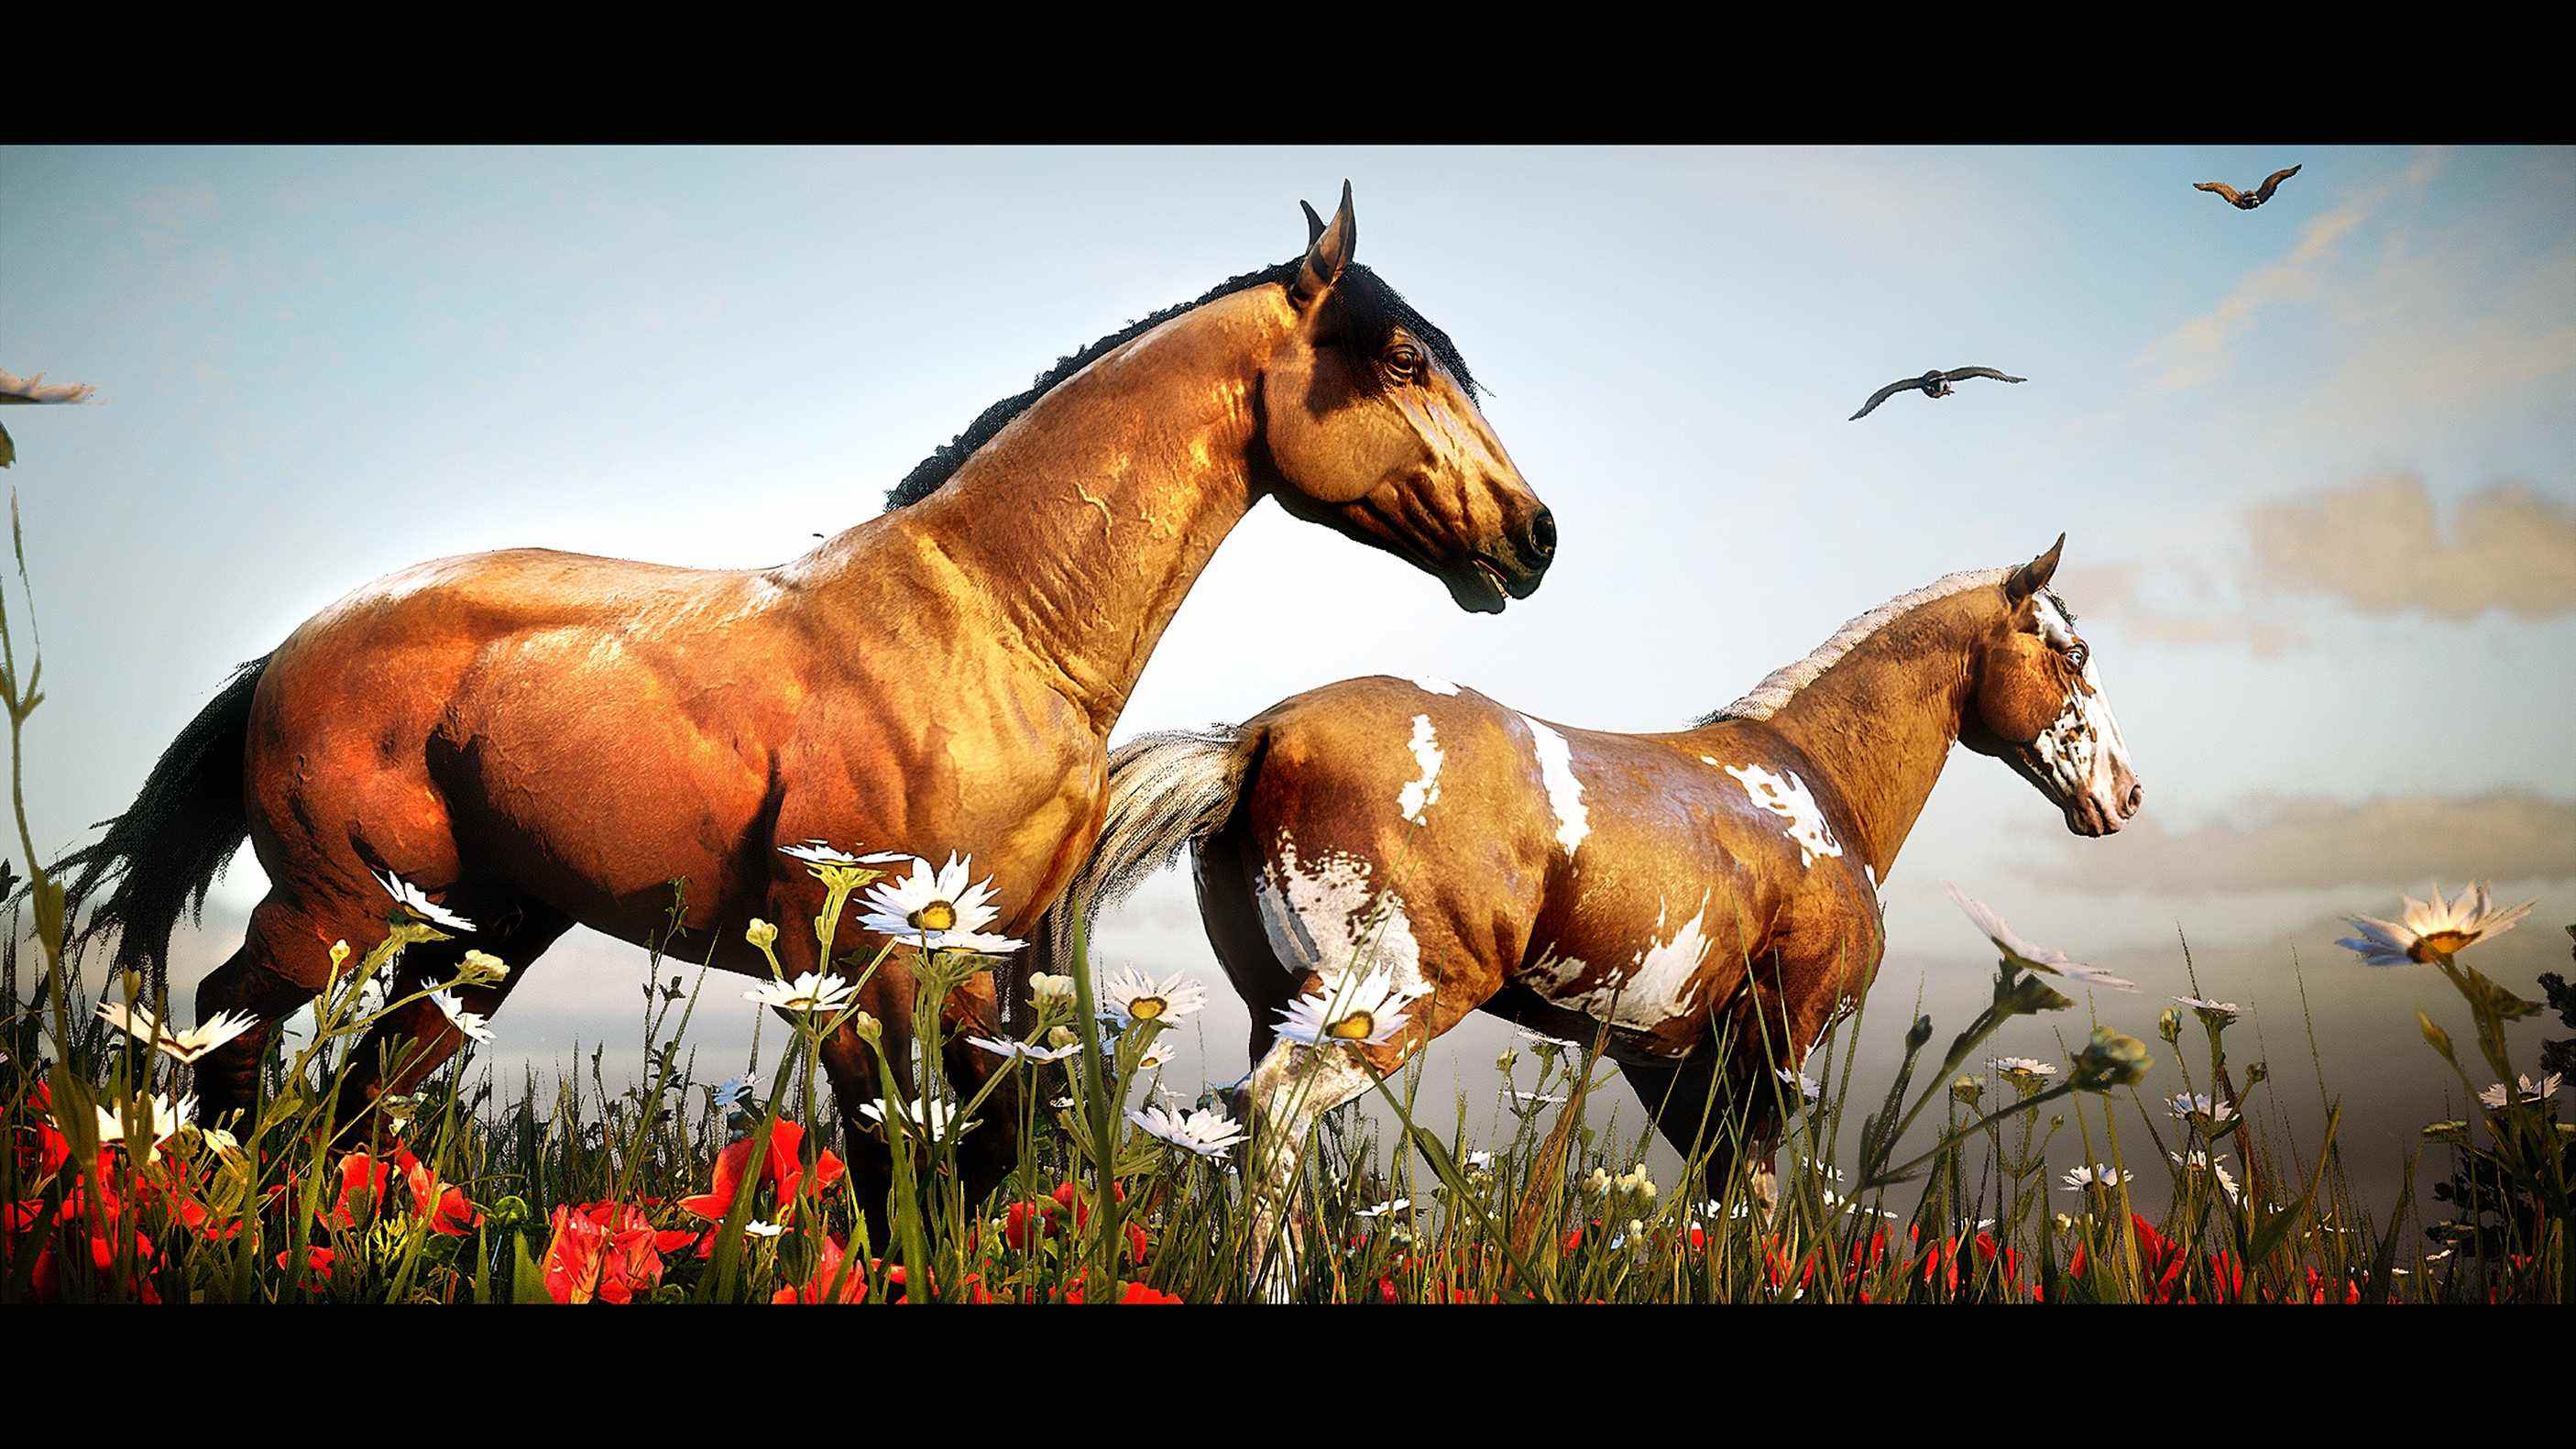 Red Dead Redemption 2 a édité une photographie en jeu de deux chevaux dans un champ d'herbe et de fleurs sauvages.